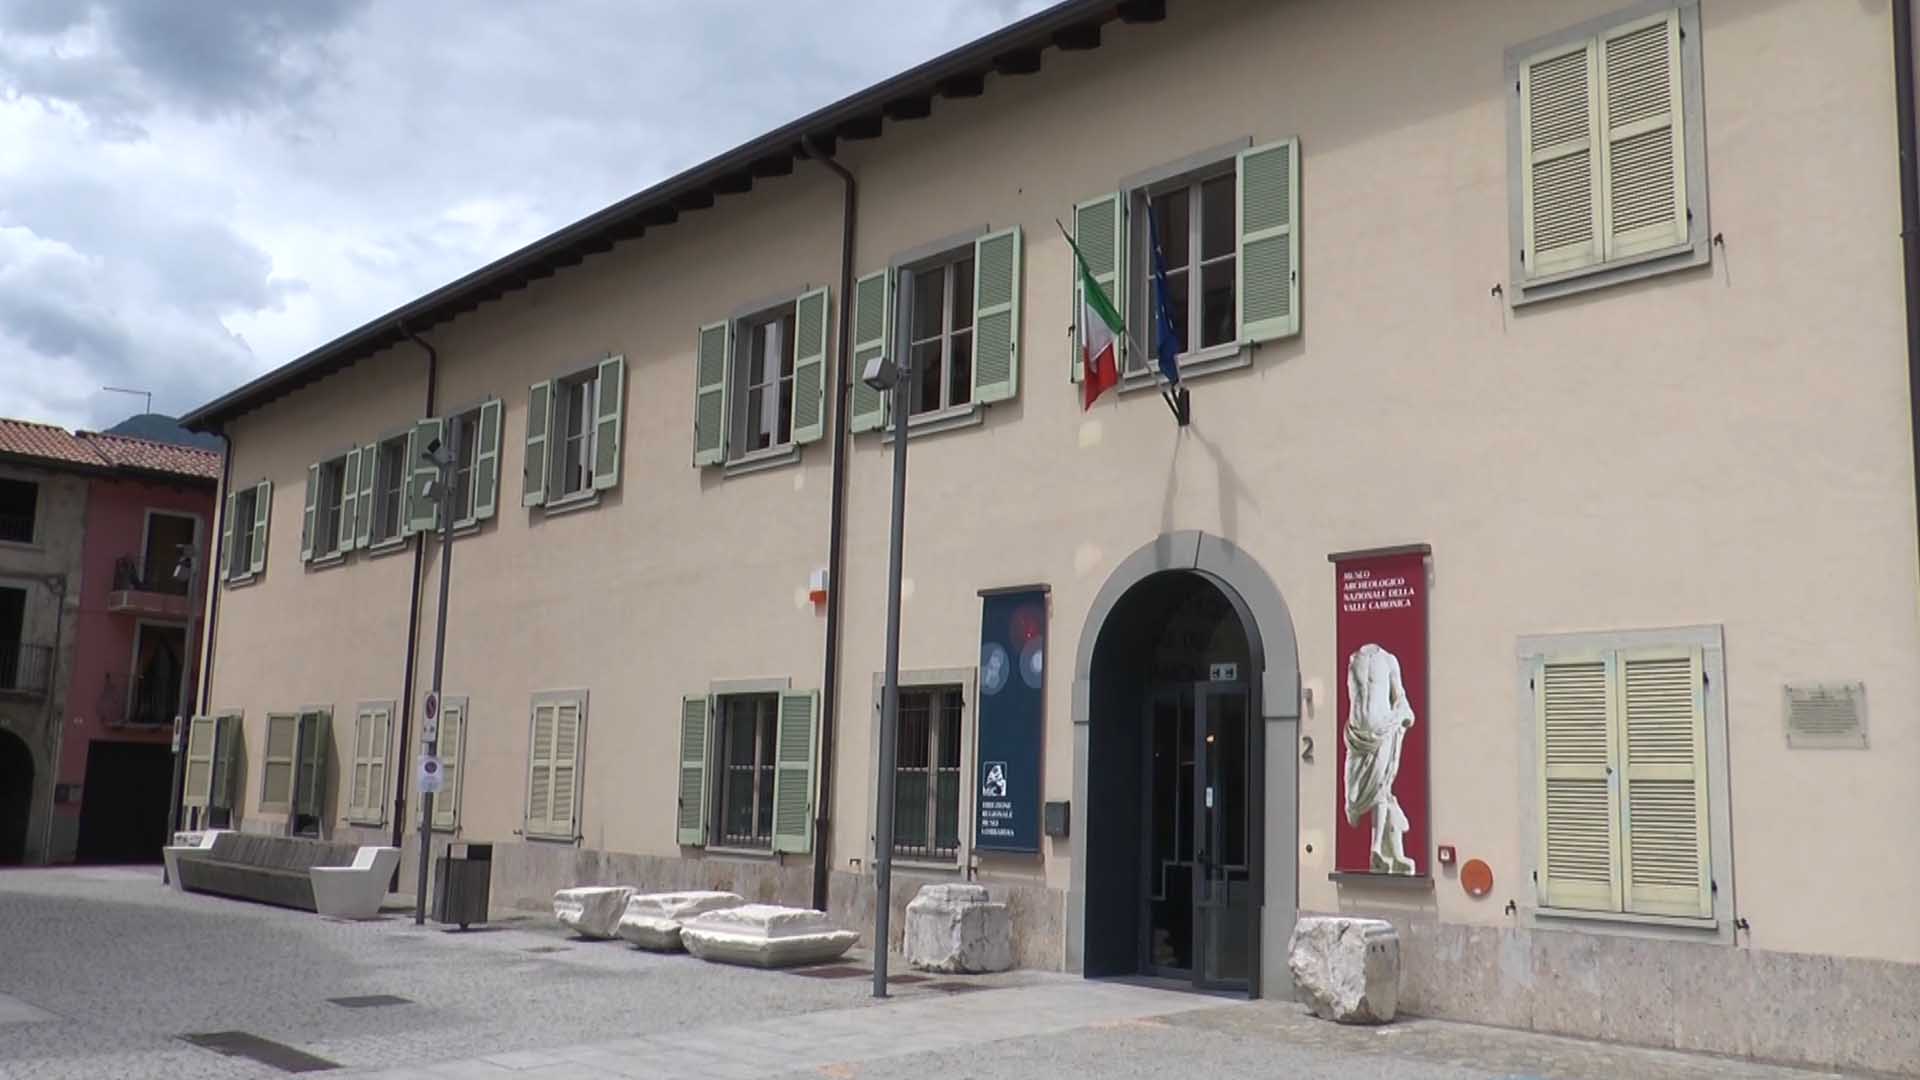 Il Museo archeologico di Cividate, uno scrigno di tesori